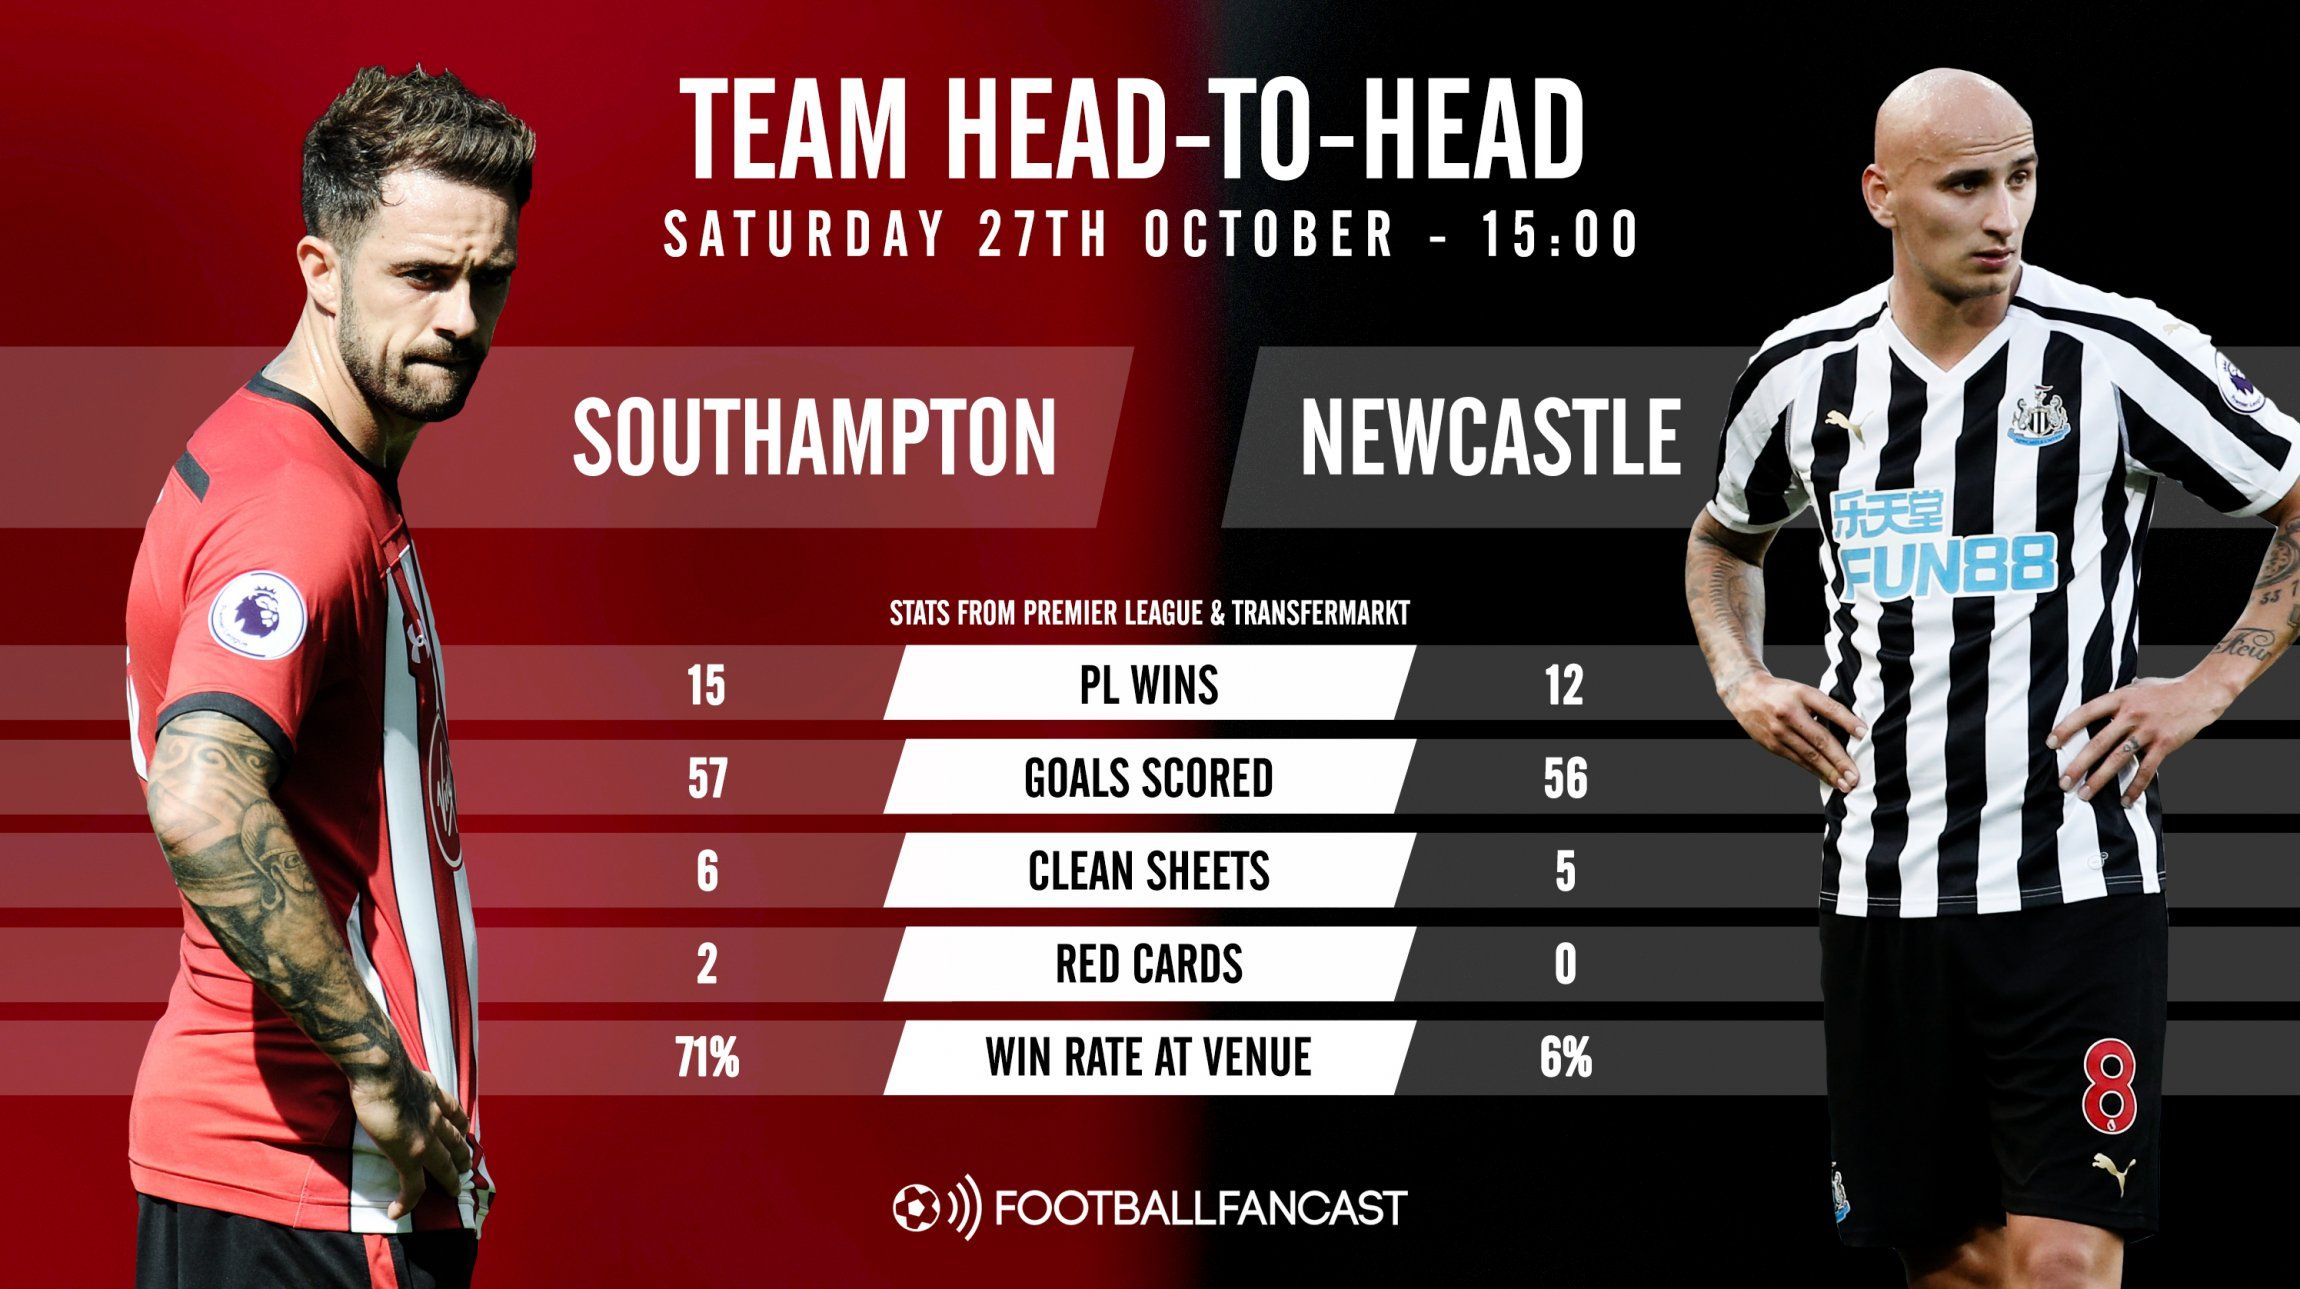 Southampton vs Newcastle - Head-to-Head record